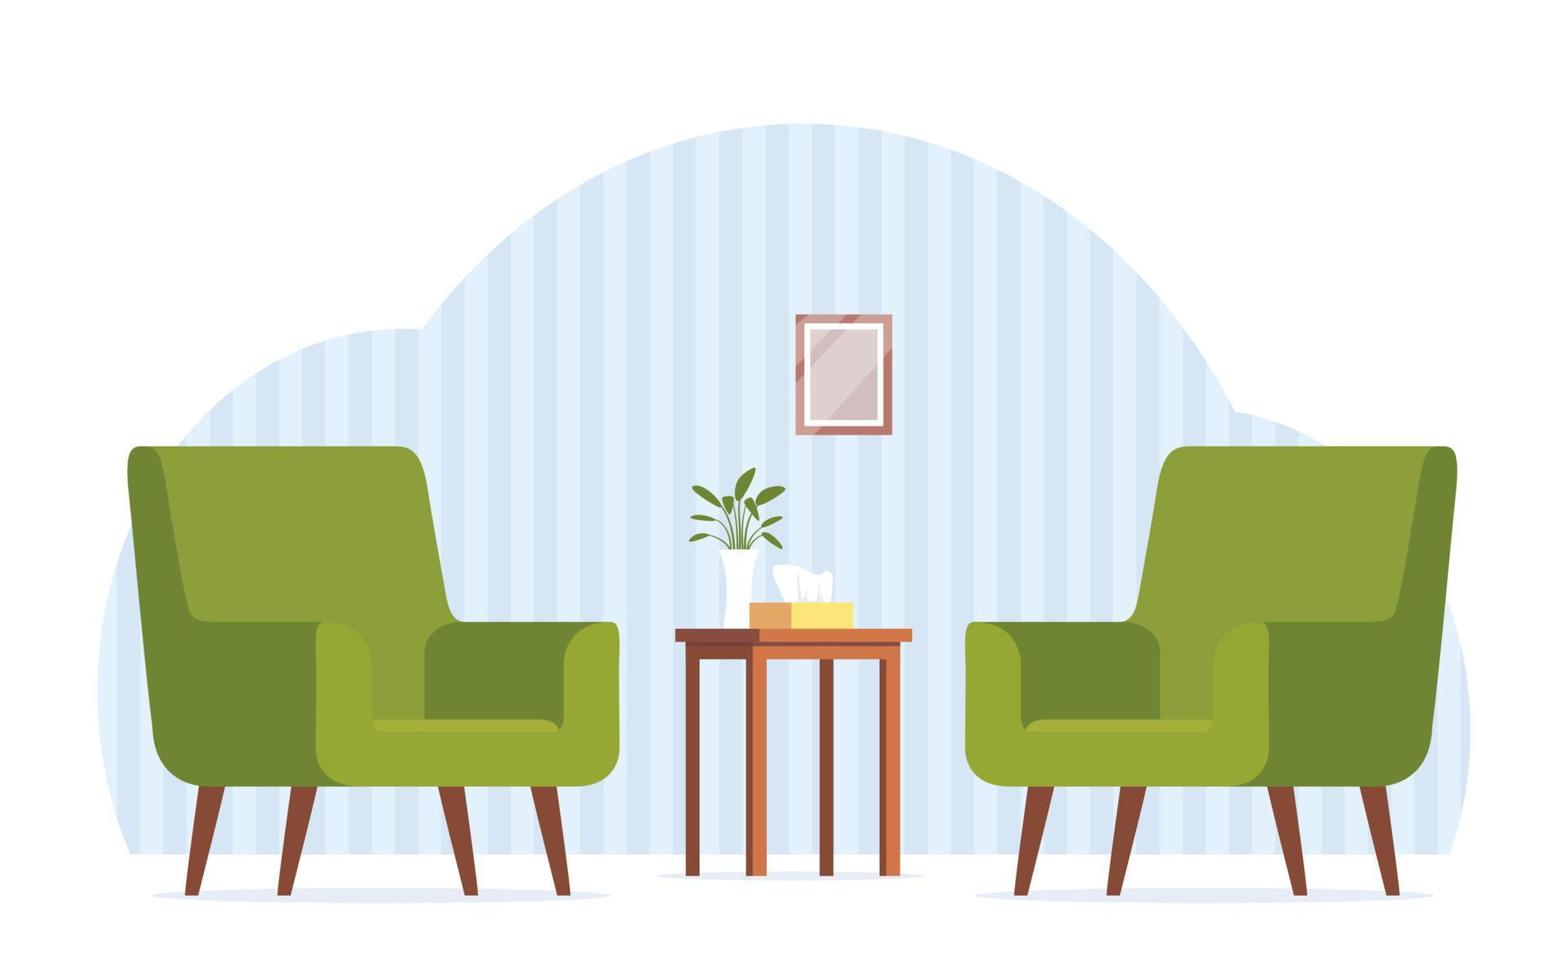 dos sillones verdes uno frente al otro. sillones para consulta psicologica. mesa, caja de servilletas, flores. cómodo interior, consultorio para consultas psicoterapéuticas. vector